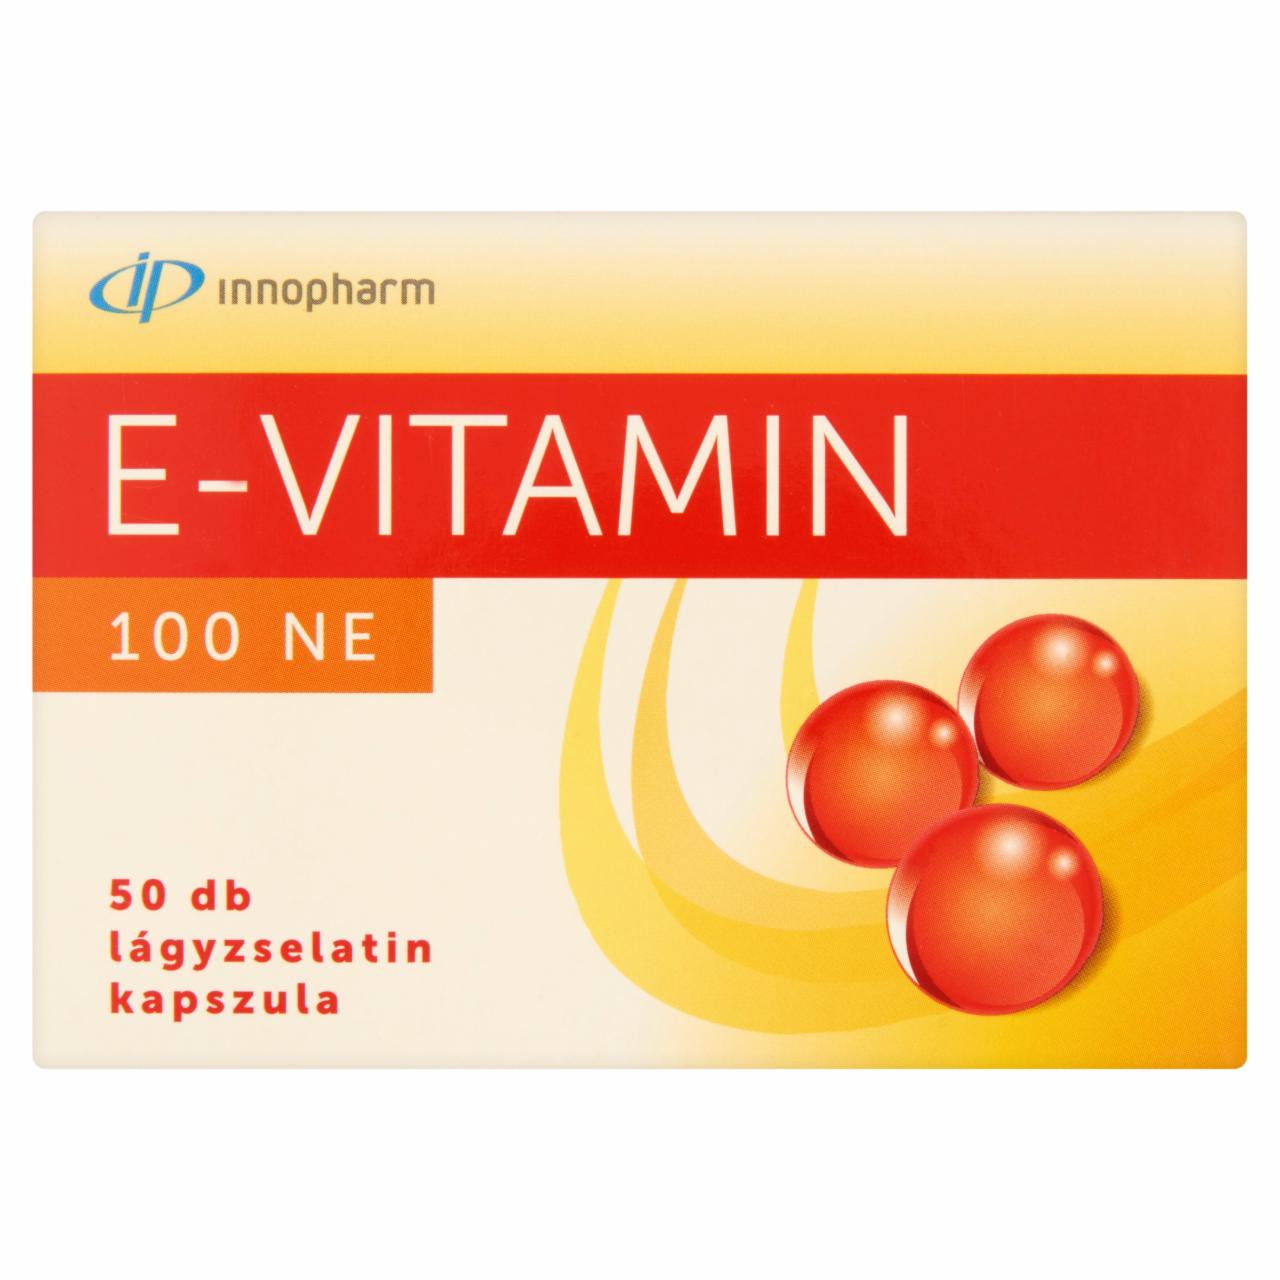 Képek - Innopharm E-vitamin 100 NE étrend-kiegészítő lágyzselatin kapszula 50 db 10,25 g